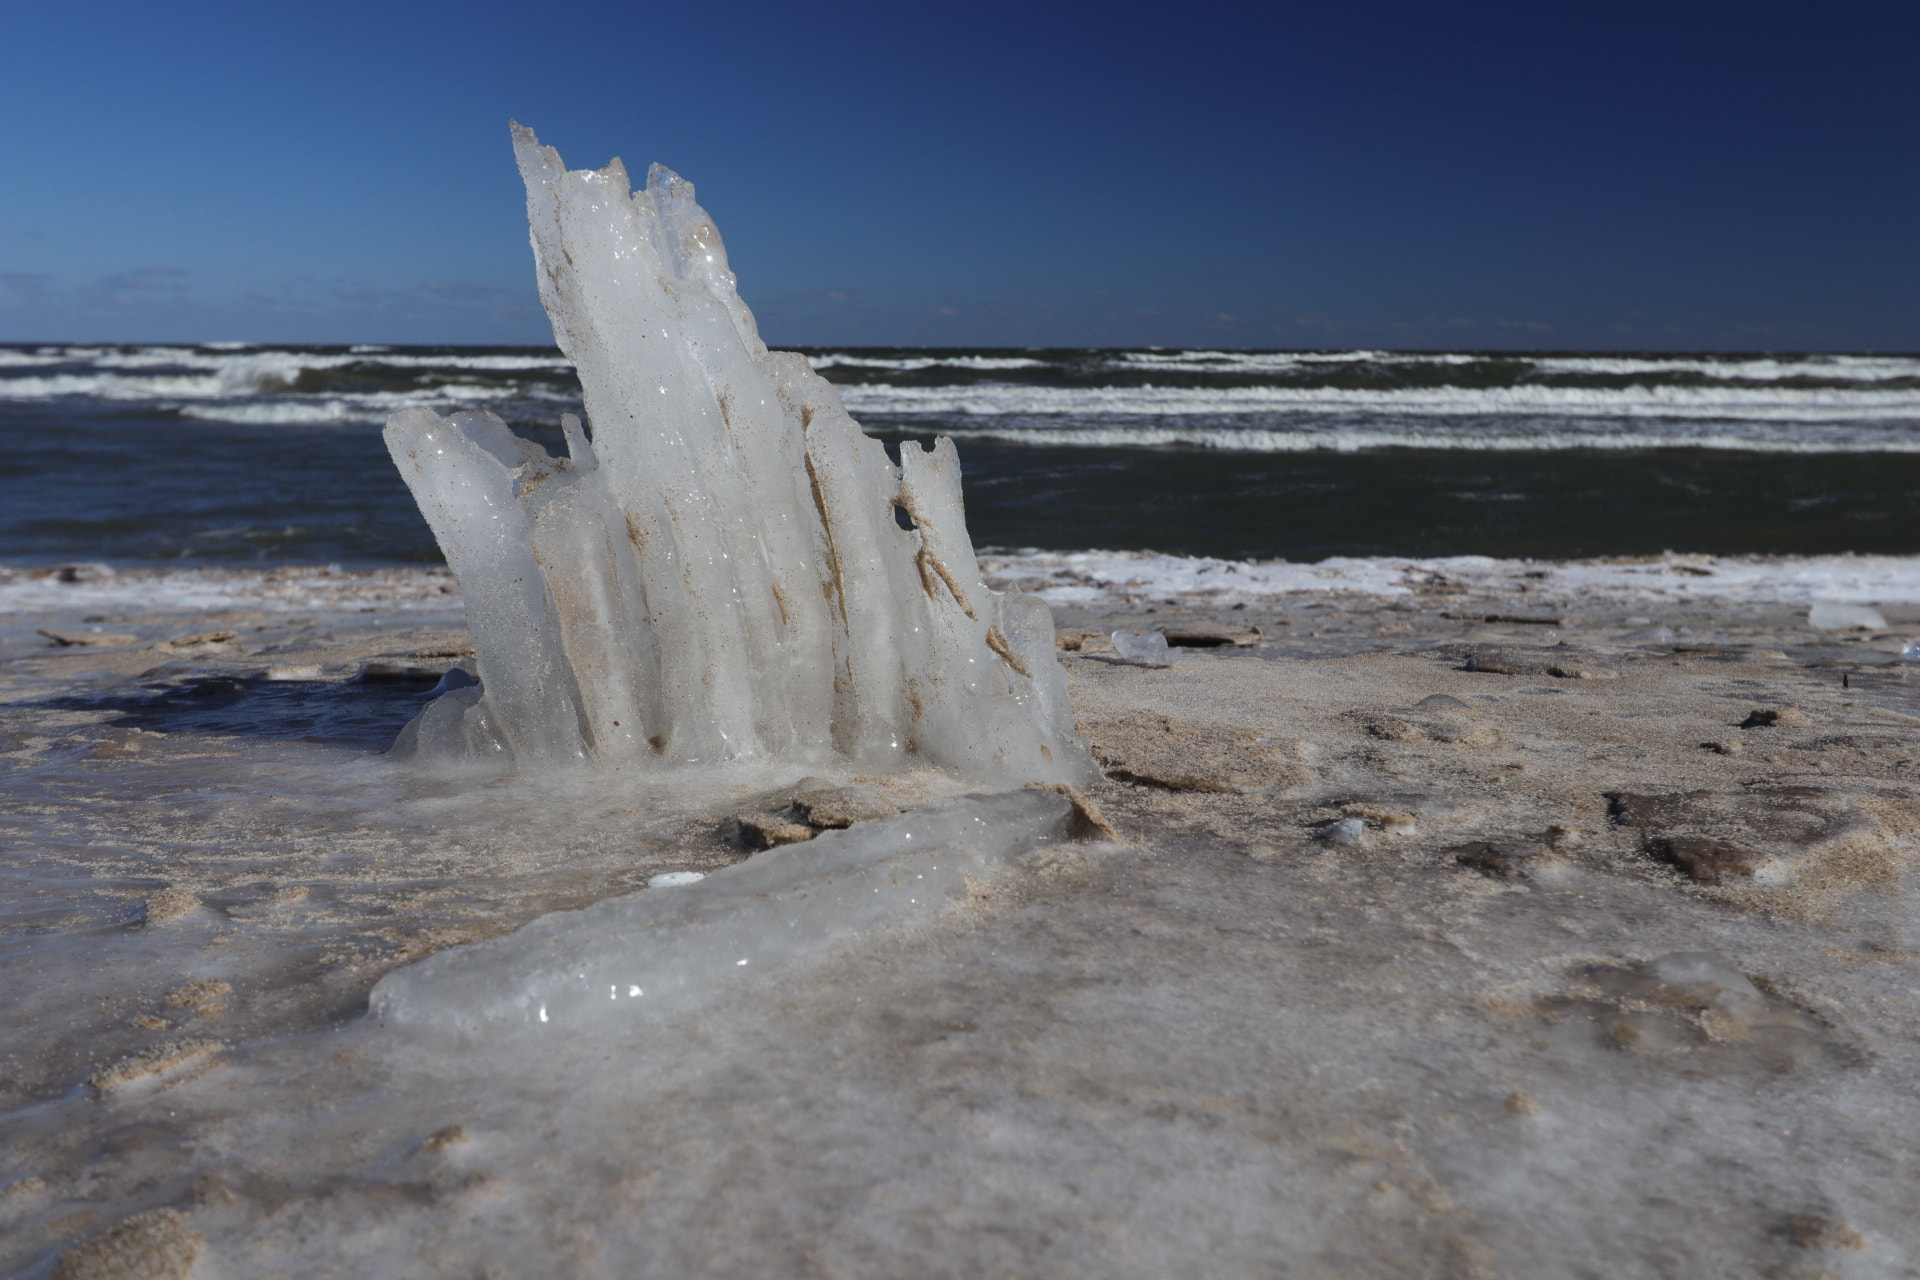 Canon EOS 80D sample photo. Iced beach göhren germany photography